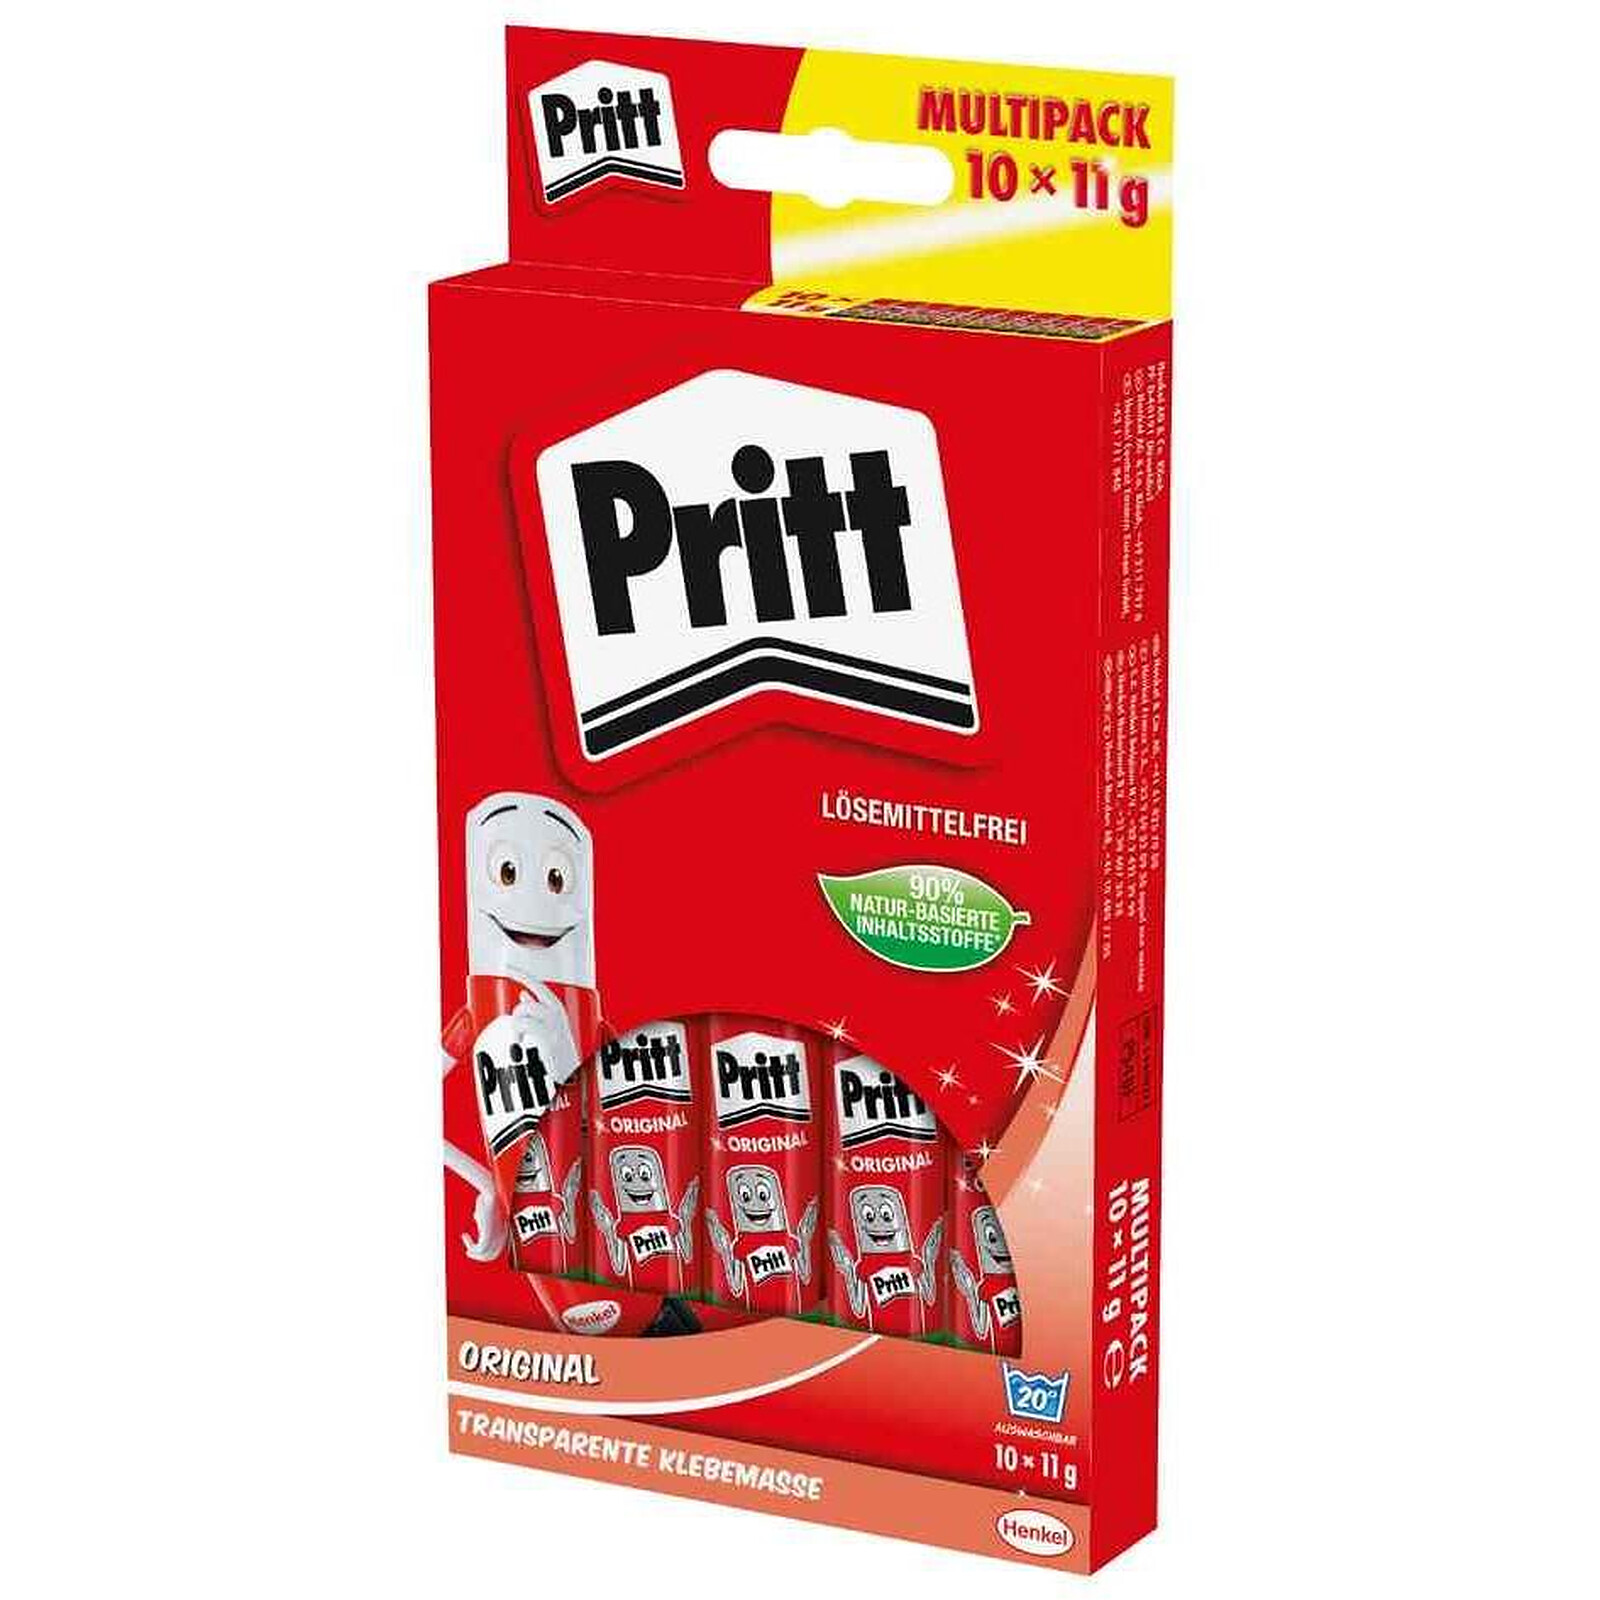 Pritt – Bâton de colle, 42 g, paquet de 2